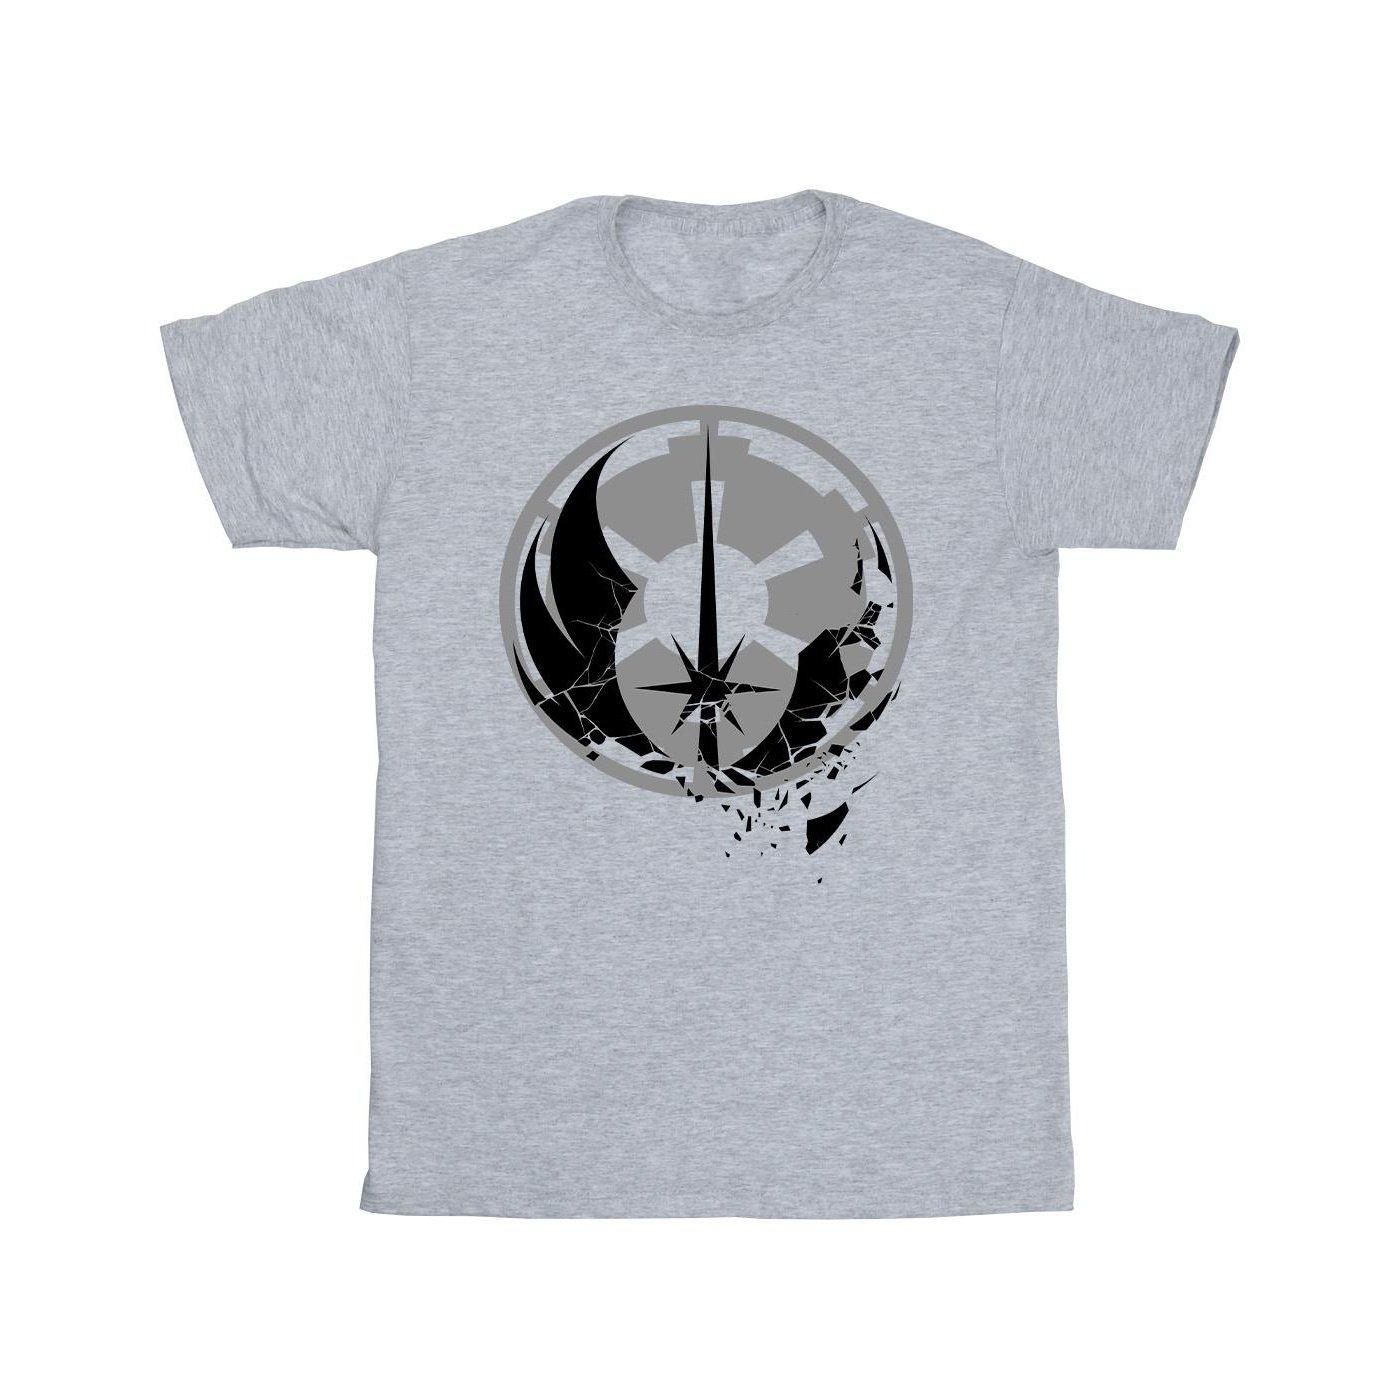 Obiwan Kenobi Fractured Logos Tshirt Jungen Grau 116 von STAR WARS